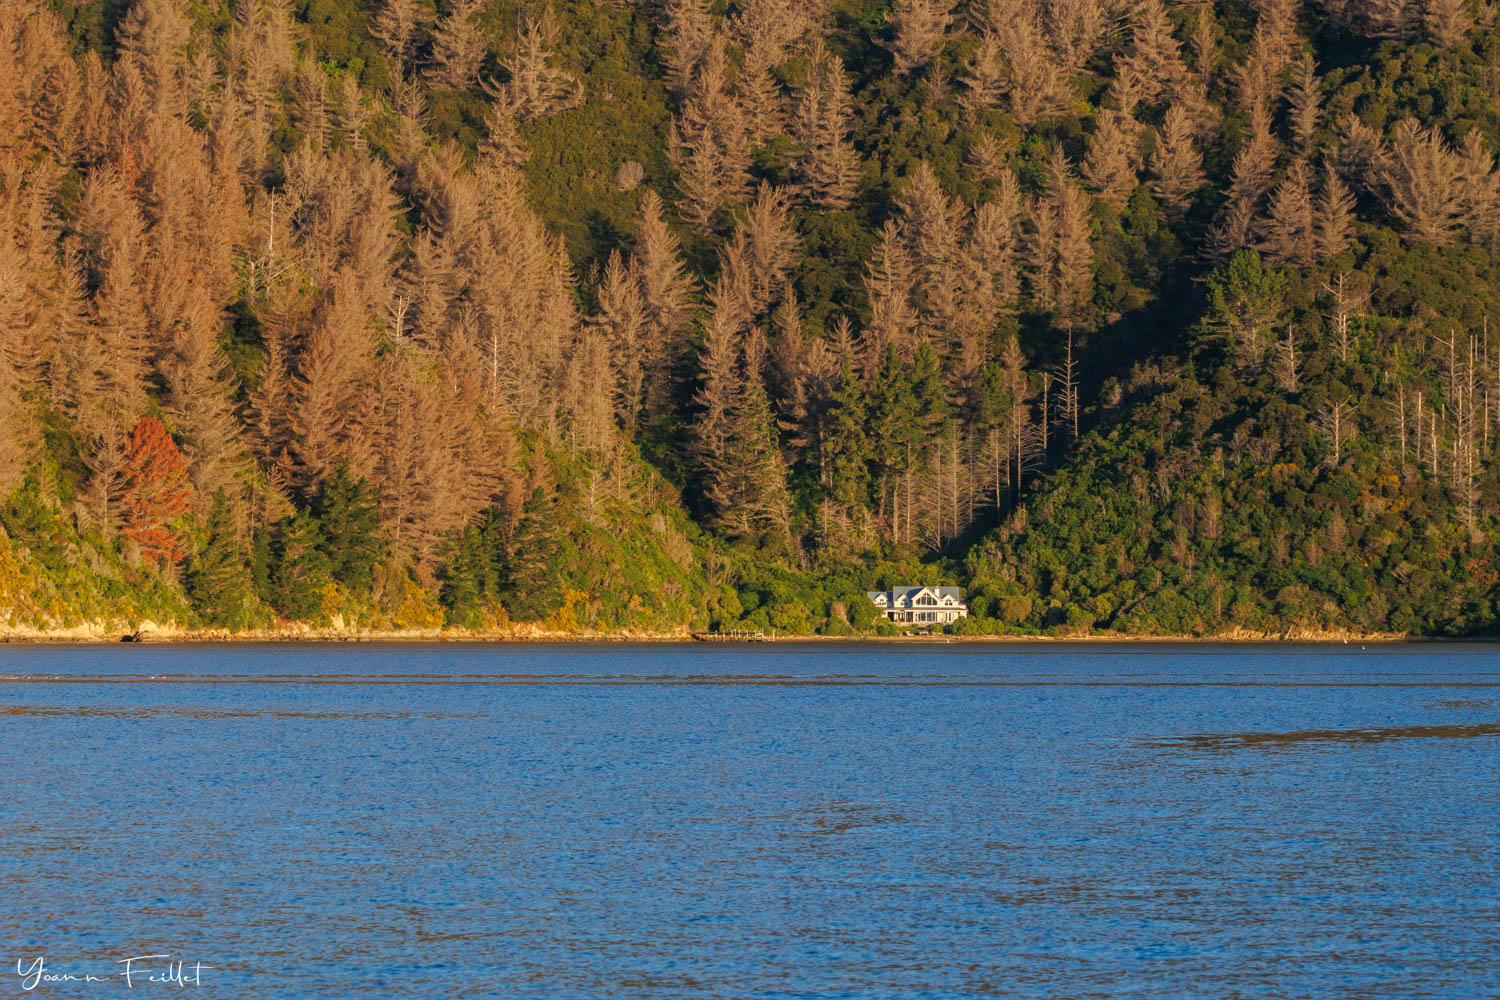 Maison privée et wilding pines dans les Marlborough Sounds Nouvelle-Zélande